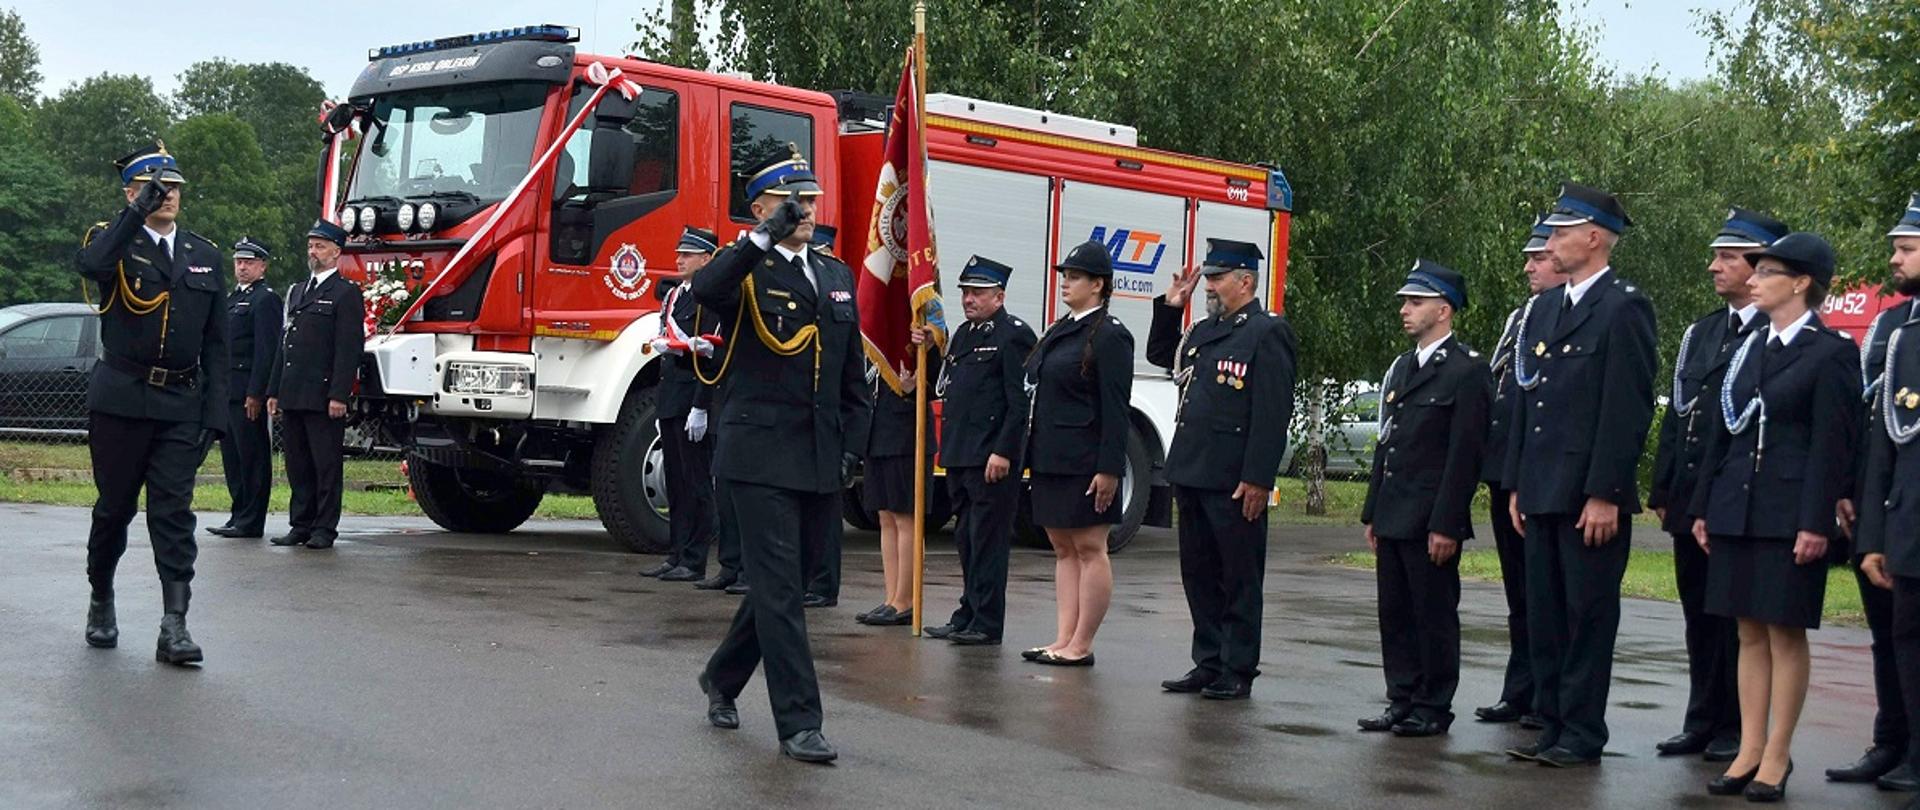 Komendant wojewódzki PSP, na prawo stoją ustawieni w rzędzie ubrani w mundury. W tle samochód pożarniczy i drzewa